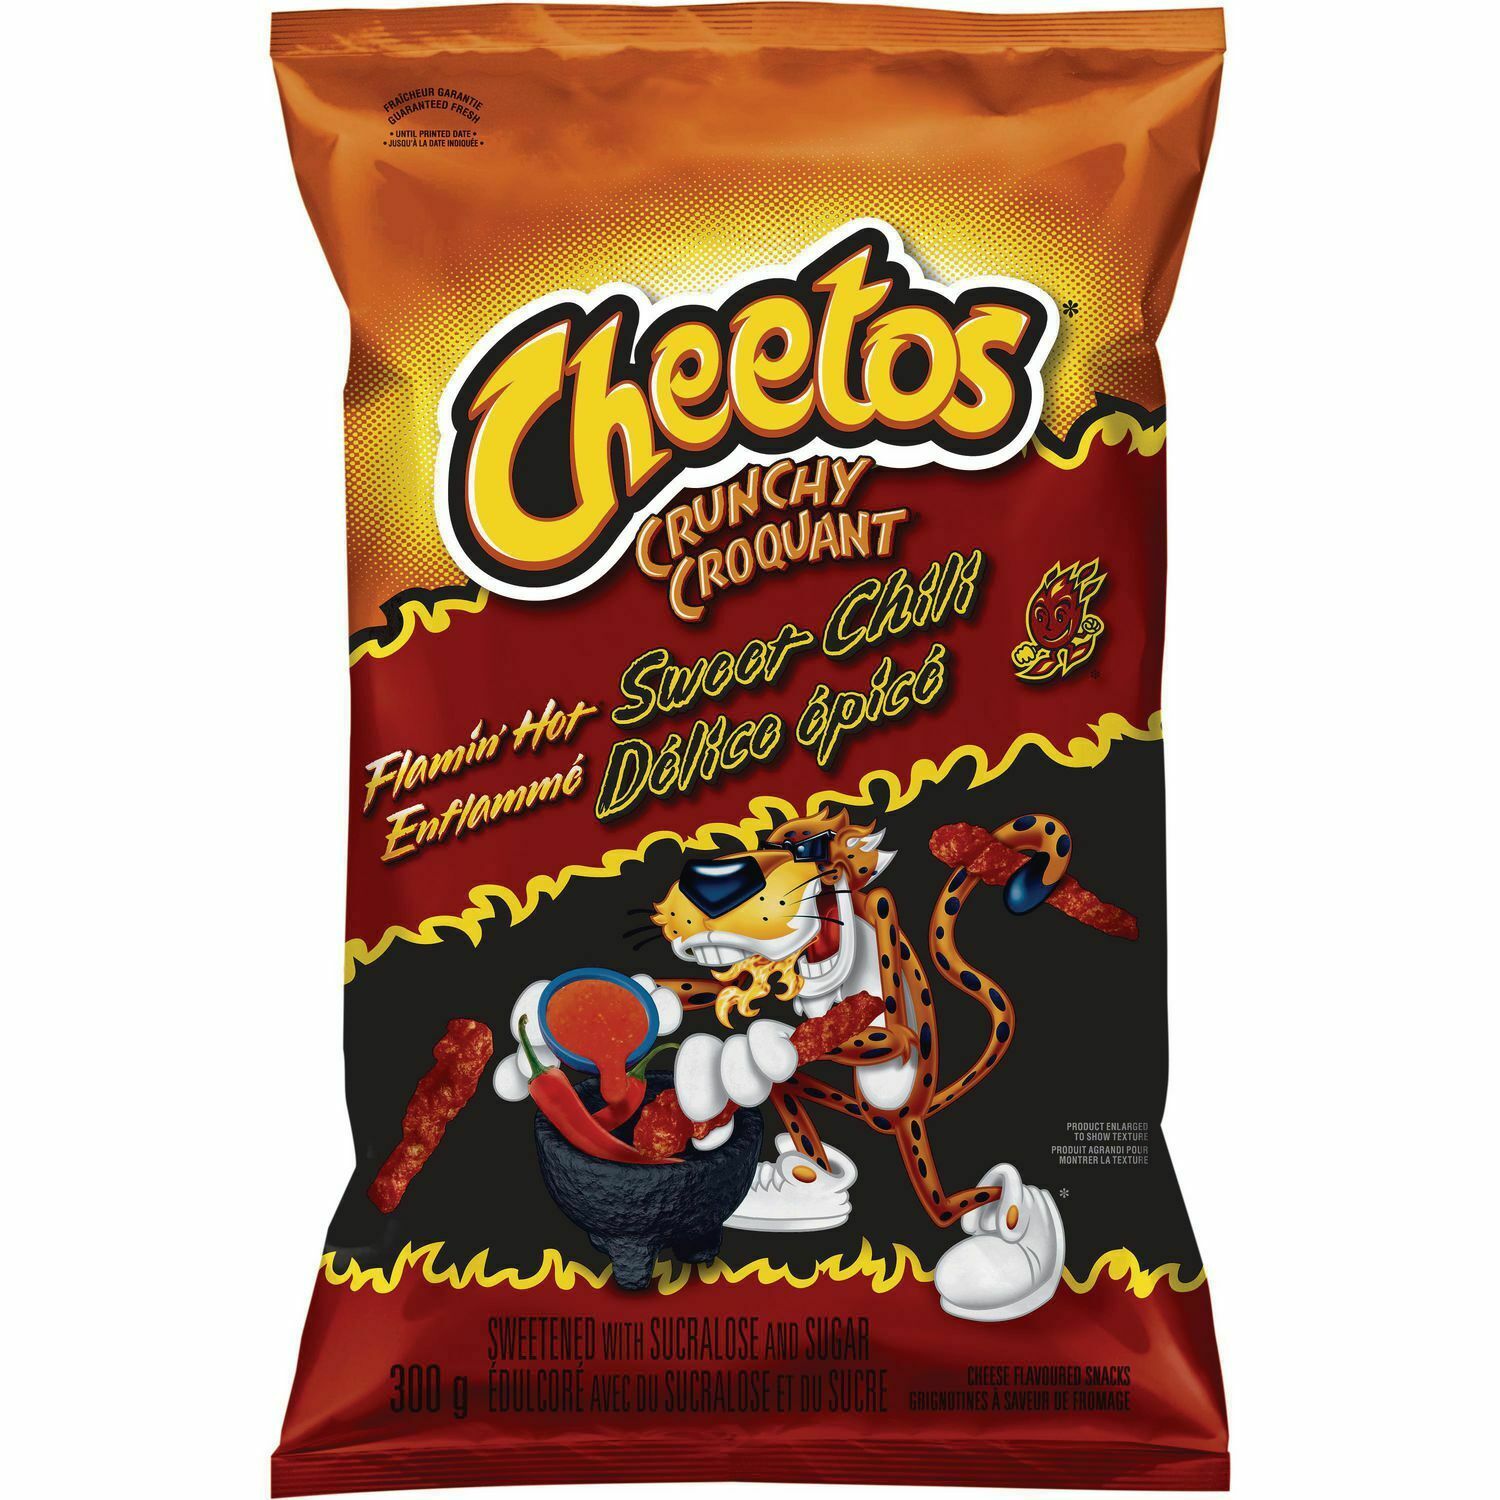 4 Bags Cheetos Flamin' Hot Sweet Chili LARGE Size 300g FRITO LAY Canad...